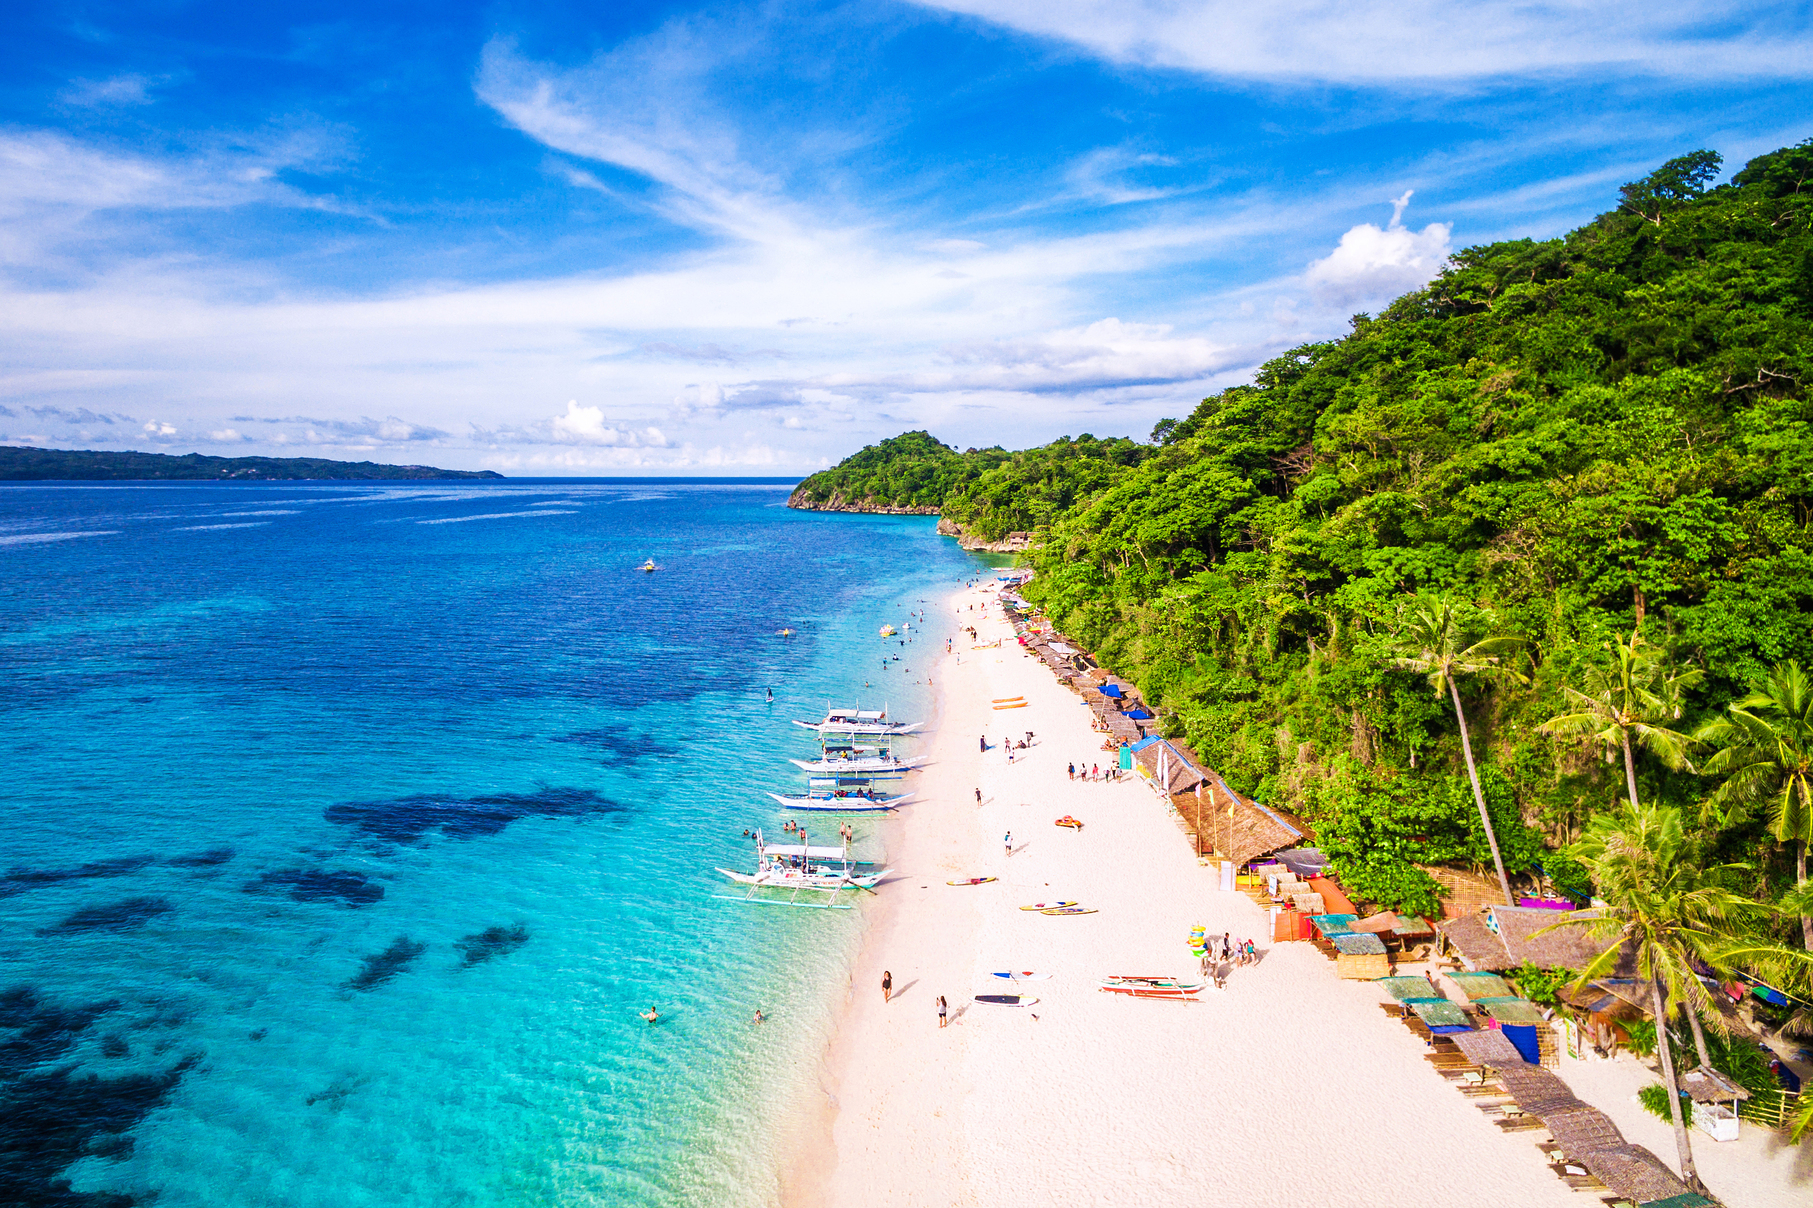 Famous white sand beach of Boracay Island